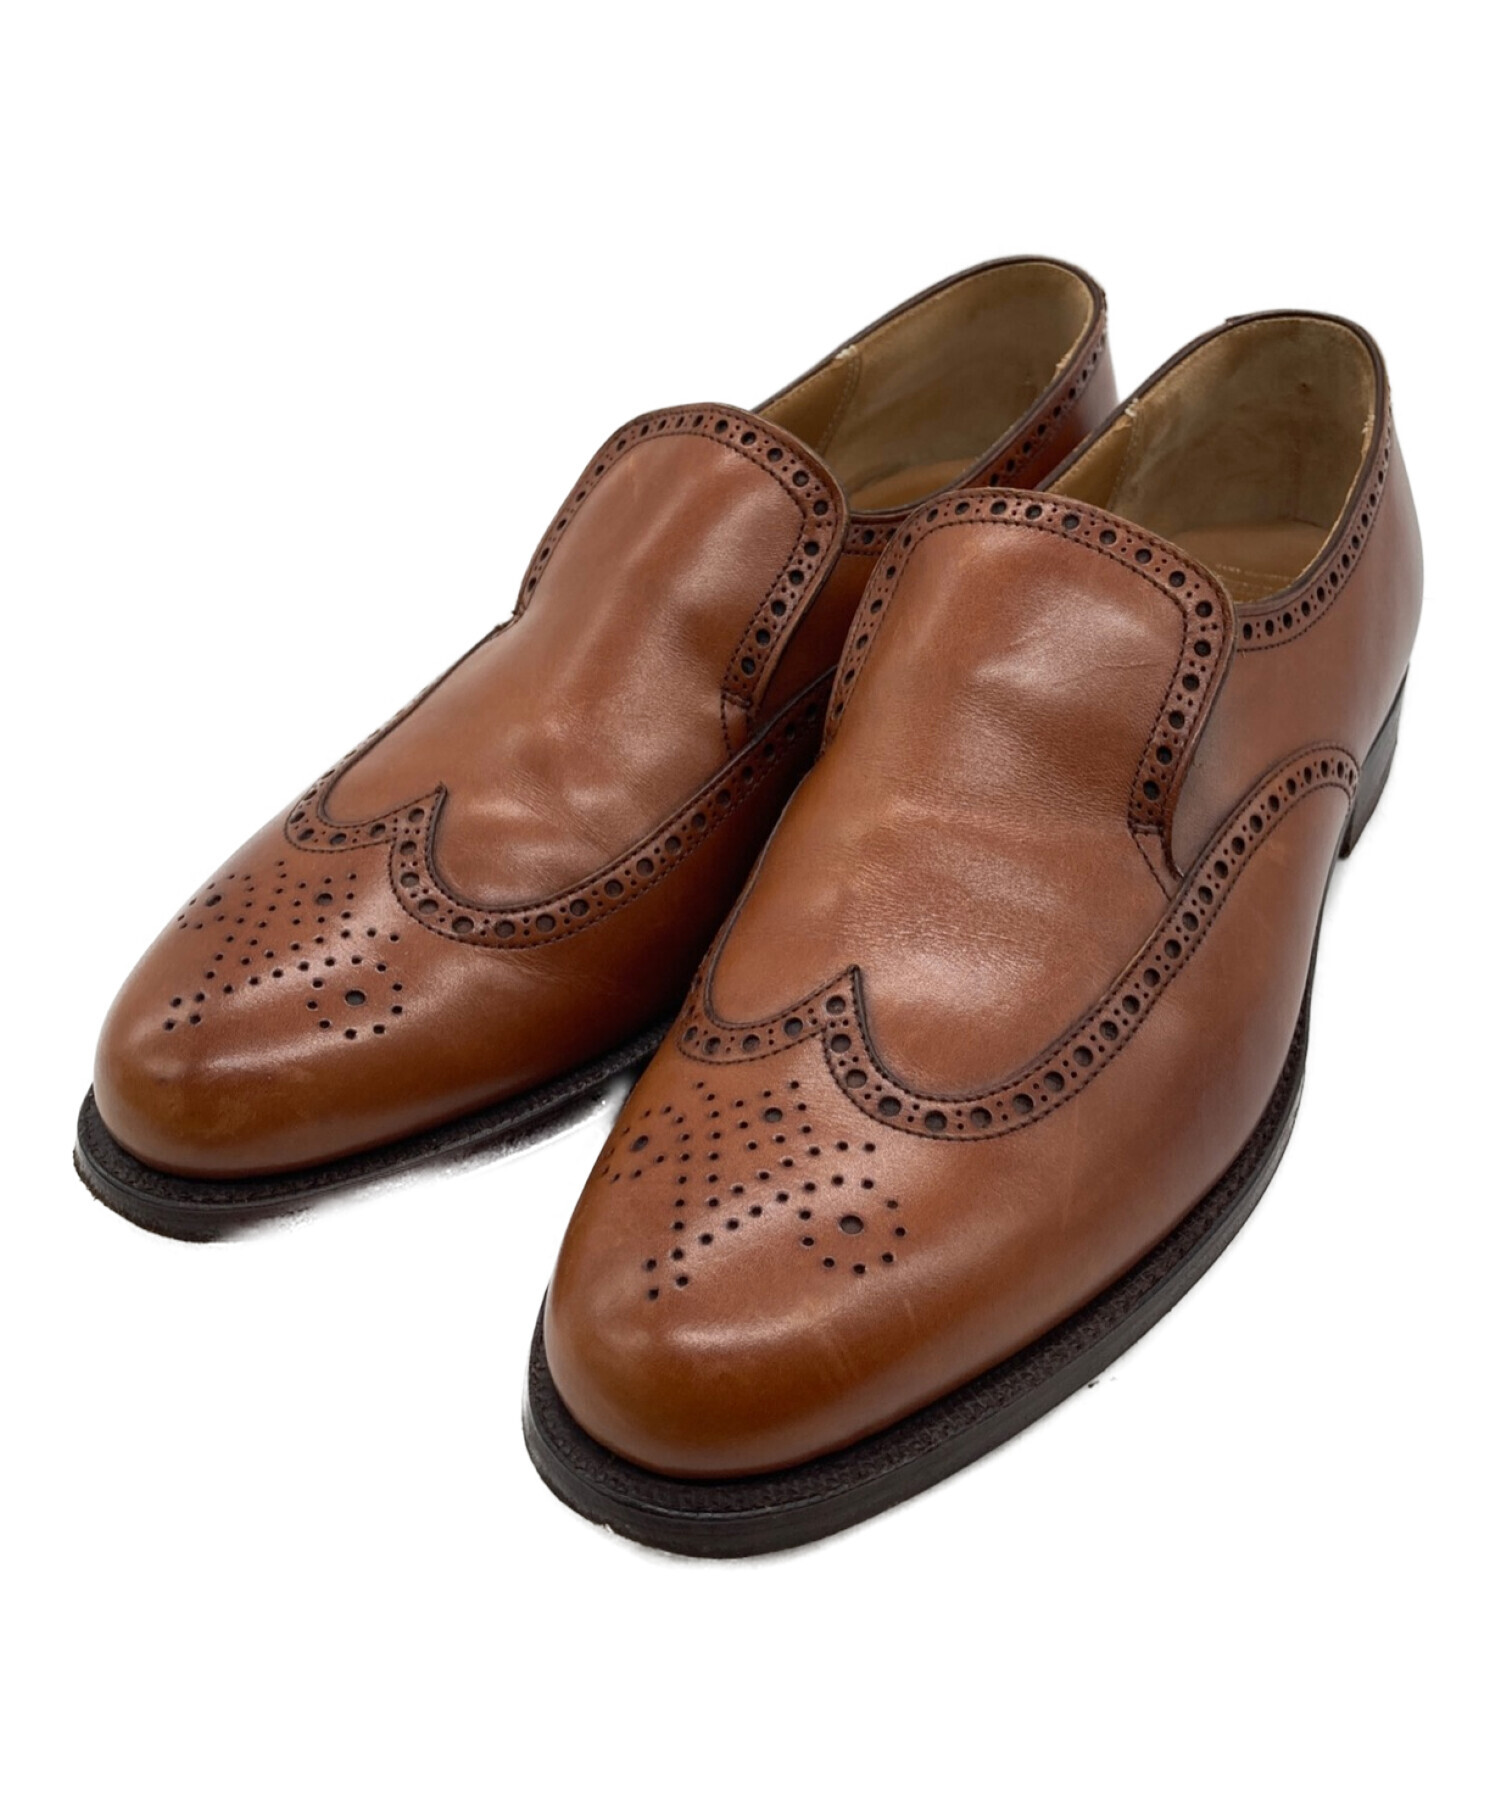 大人気100%新品Peal&Co Brooks Brothers モンクブルックスブラザーズ 靴